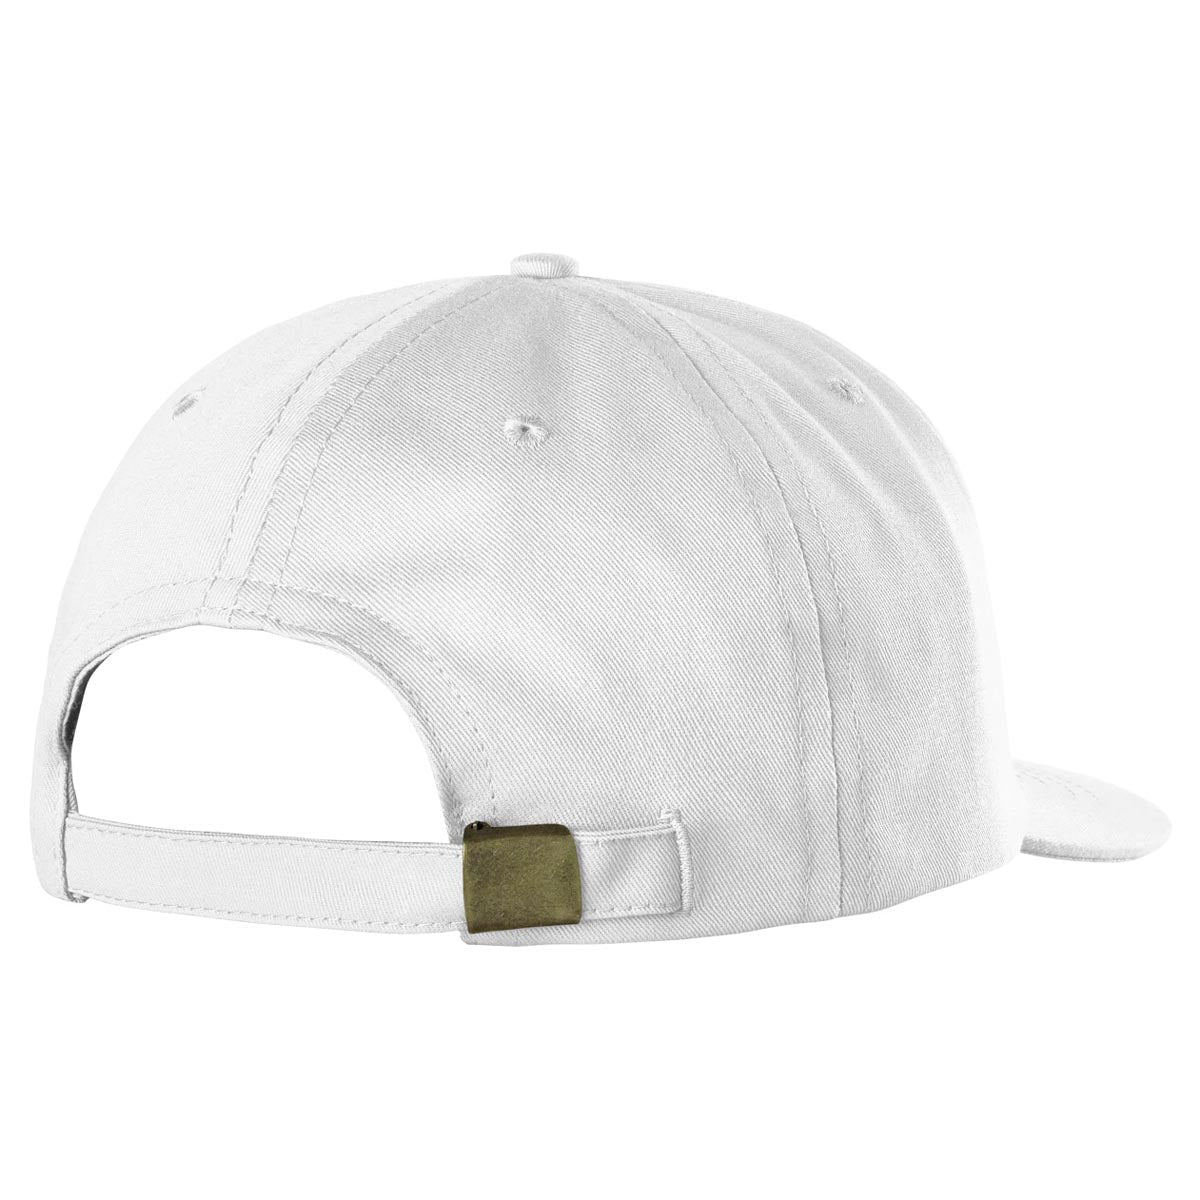 Emerica Micro Triangle Hat - White image 2